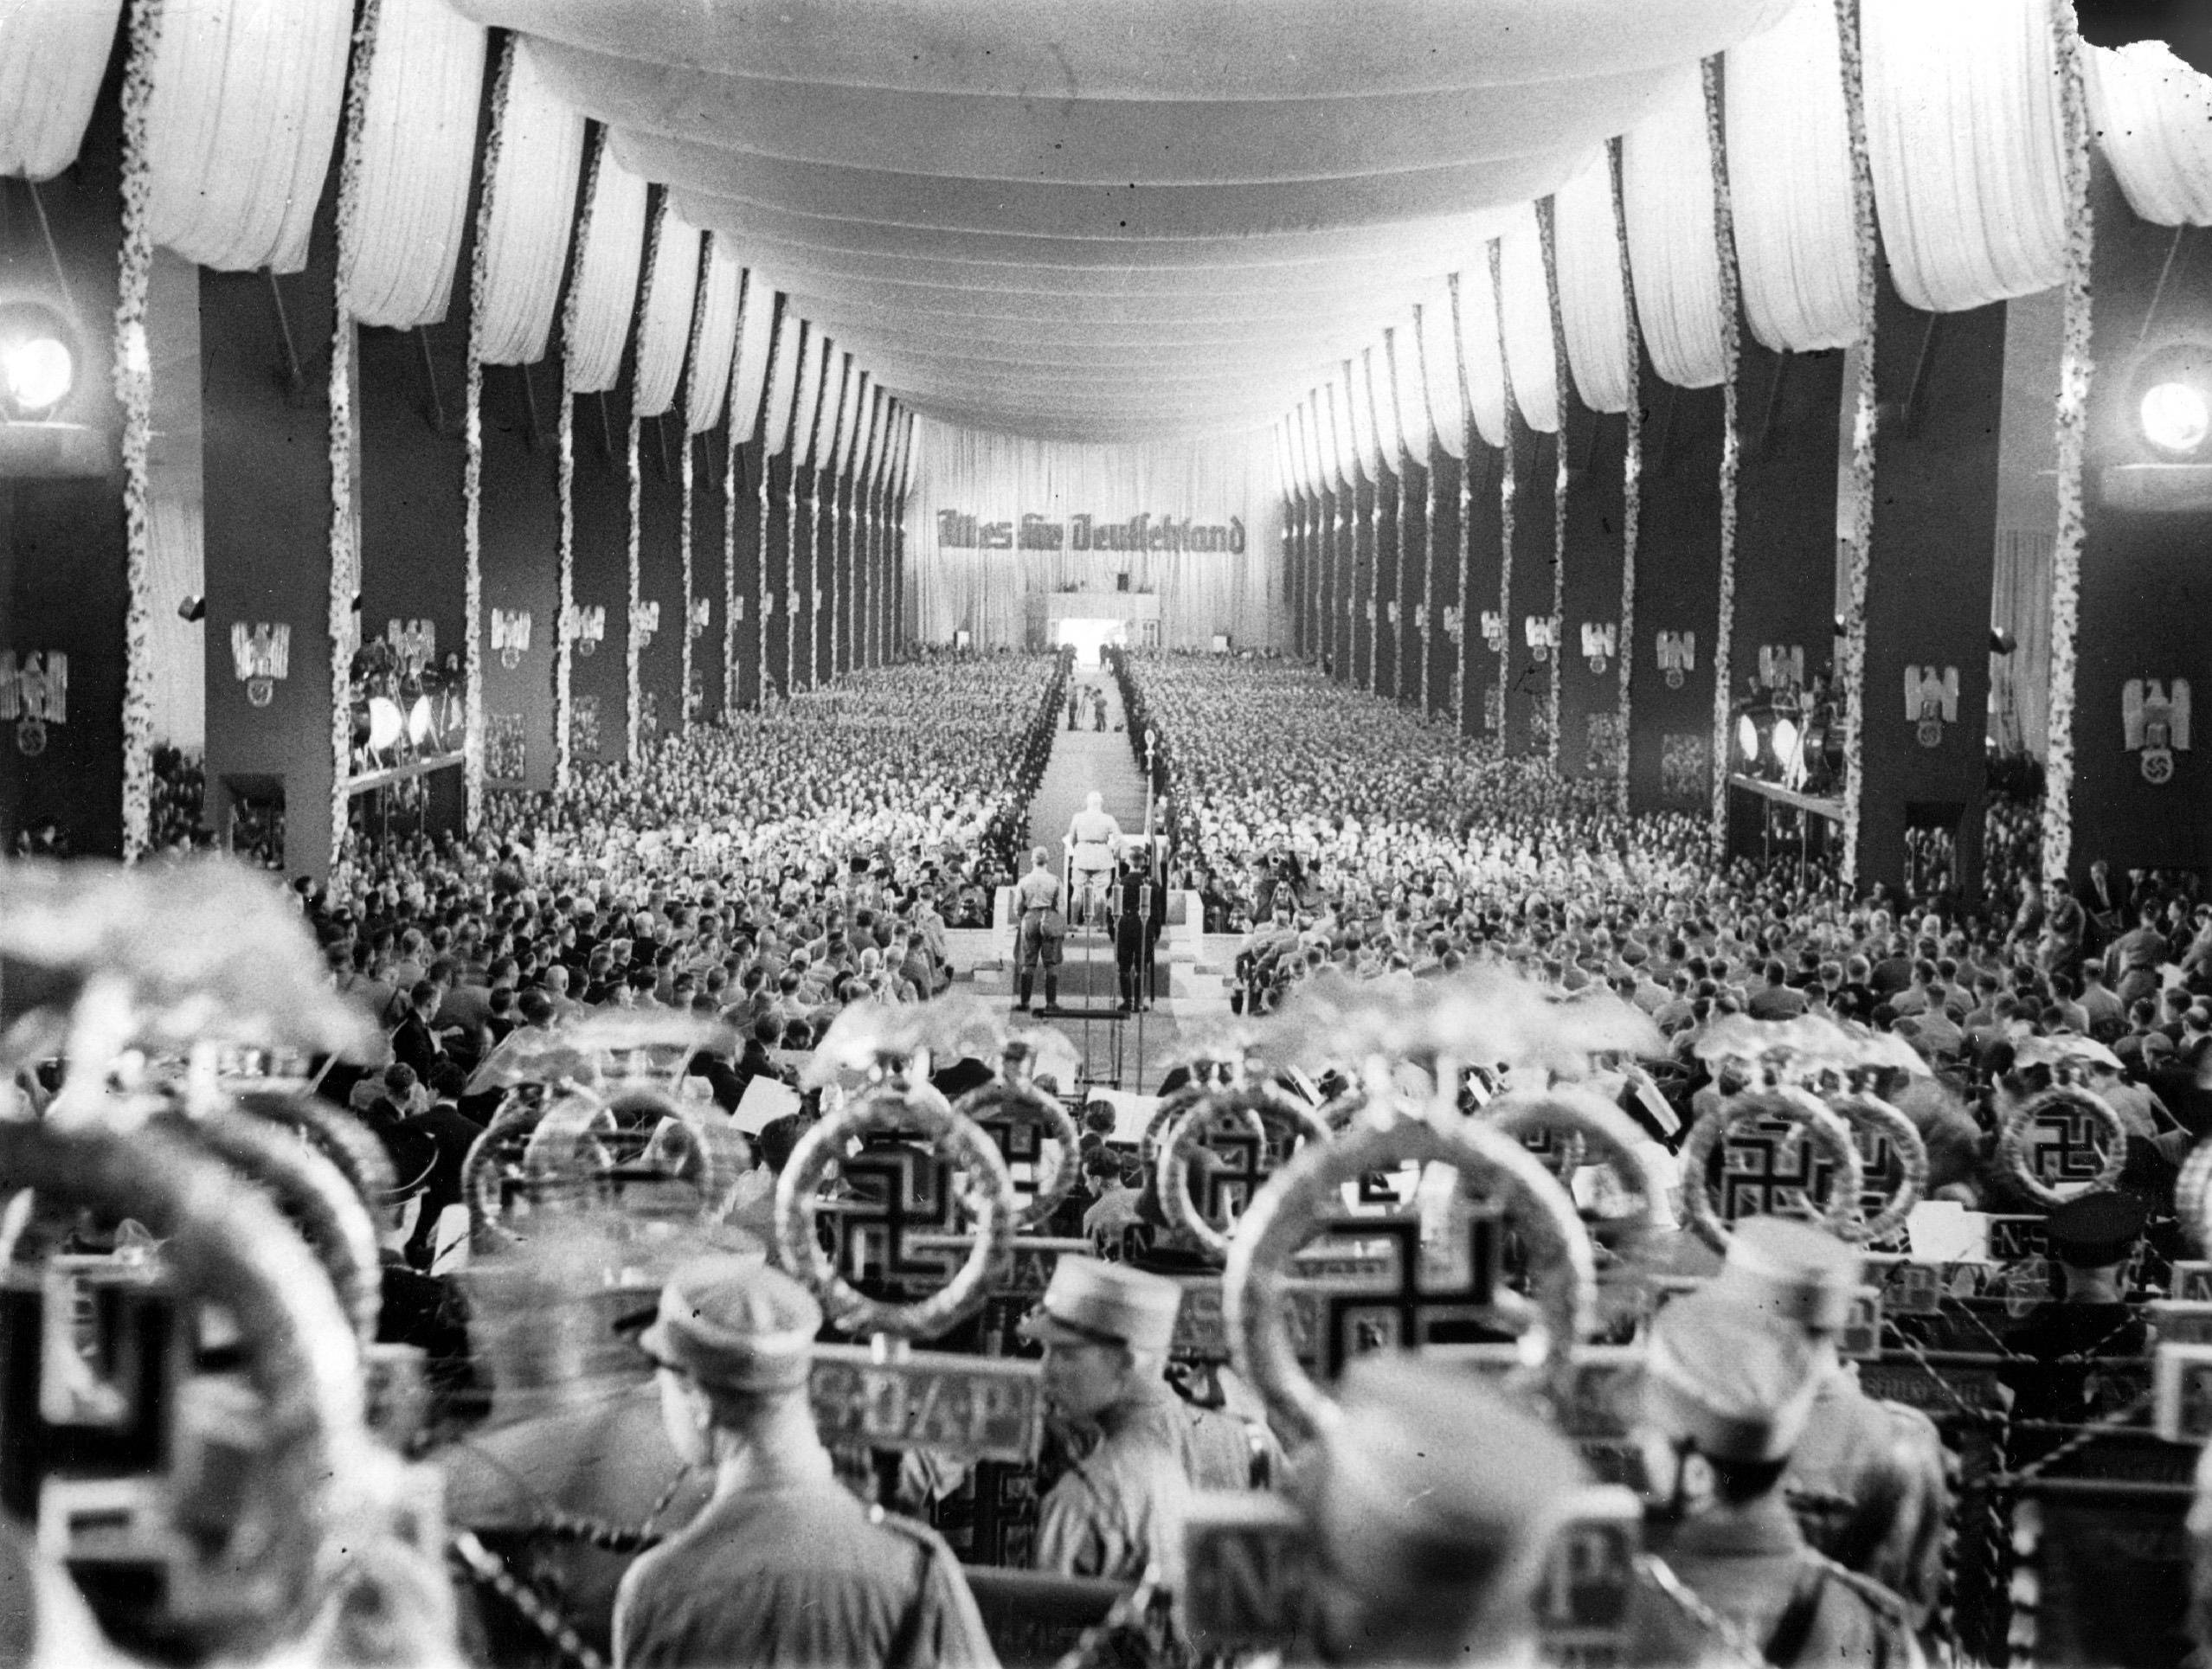 Alles für Deutschland: Die Parole der SA auf dem Reichsparteitag der NSDAP 1934 in Nürnberg